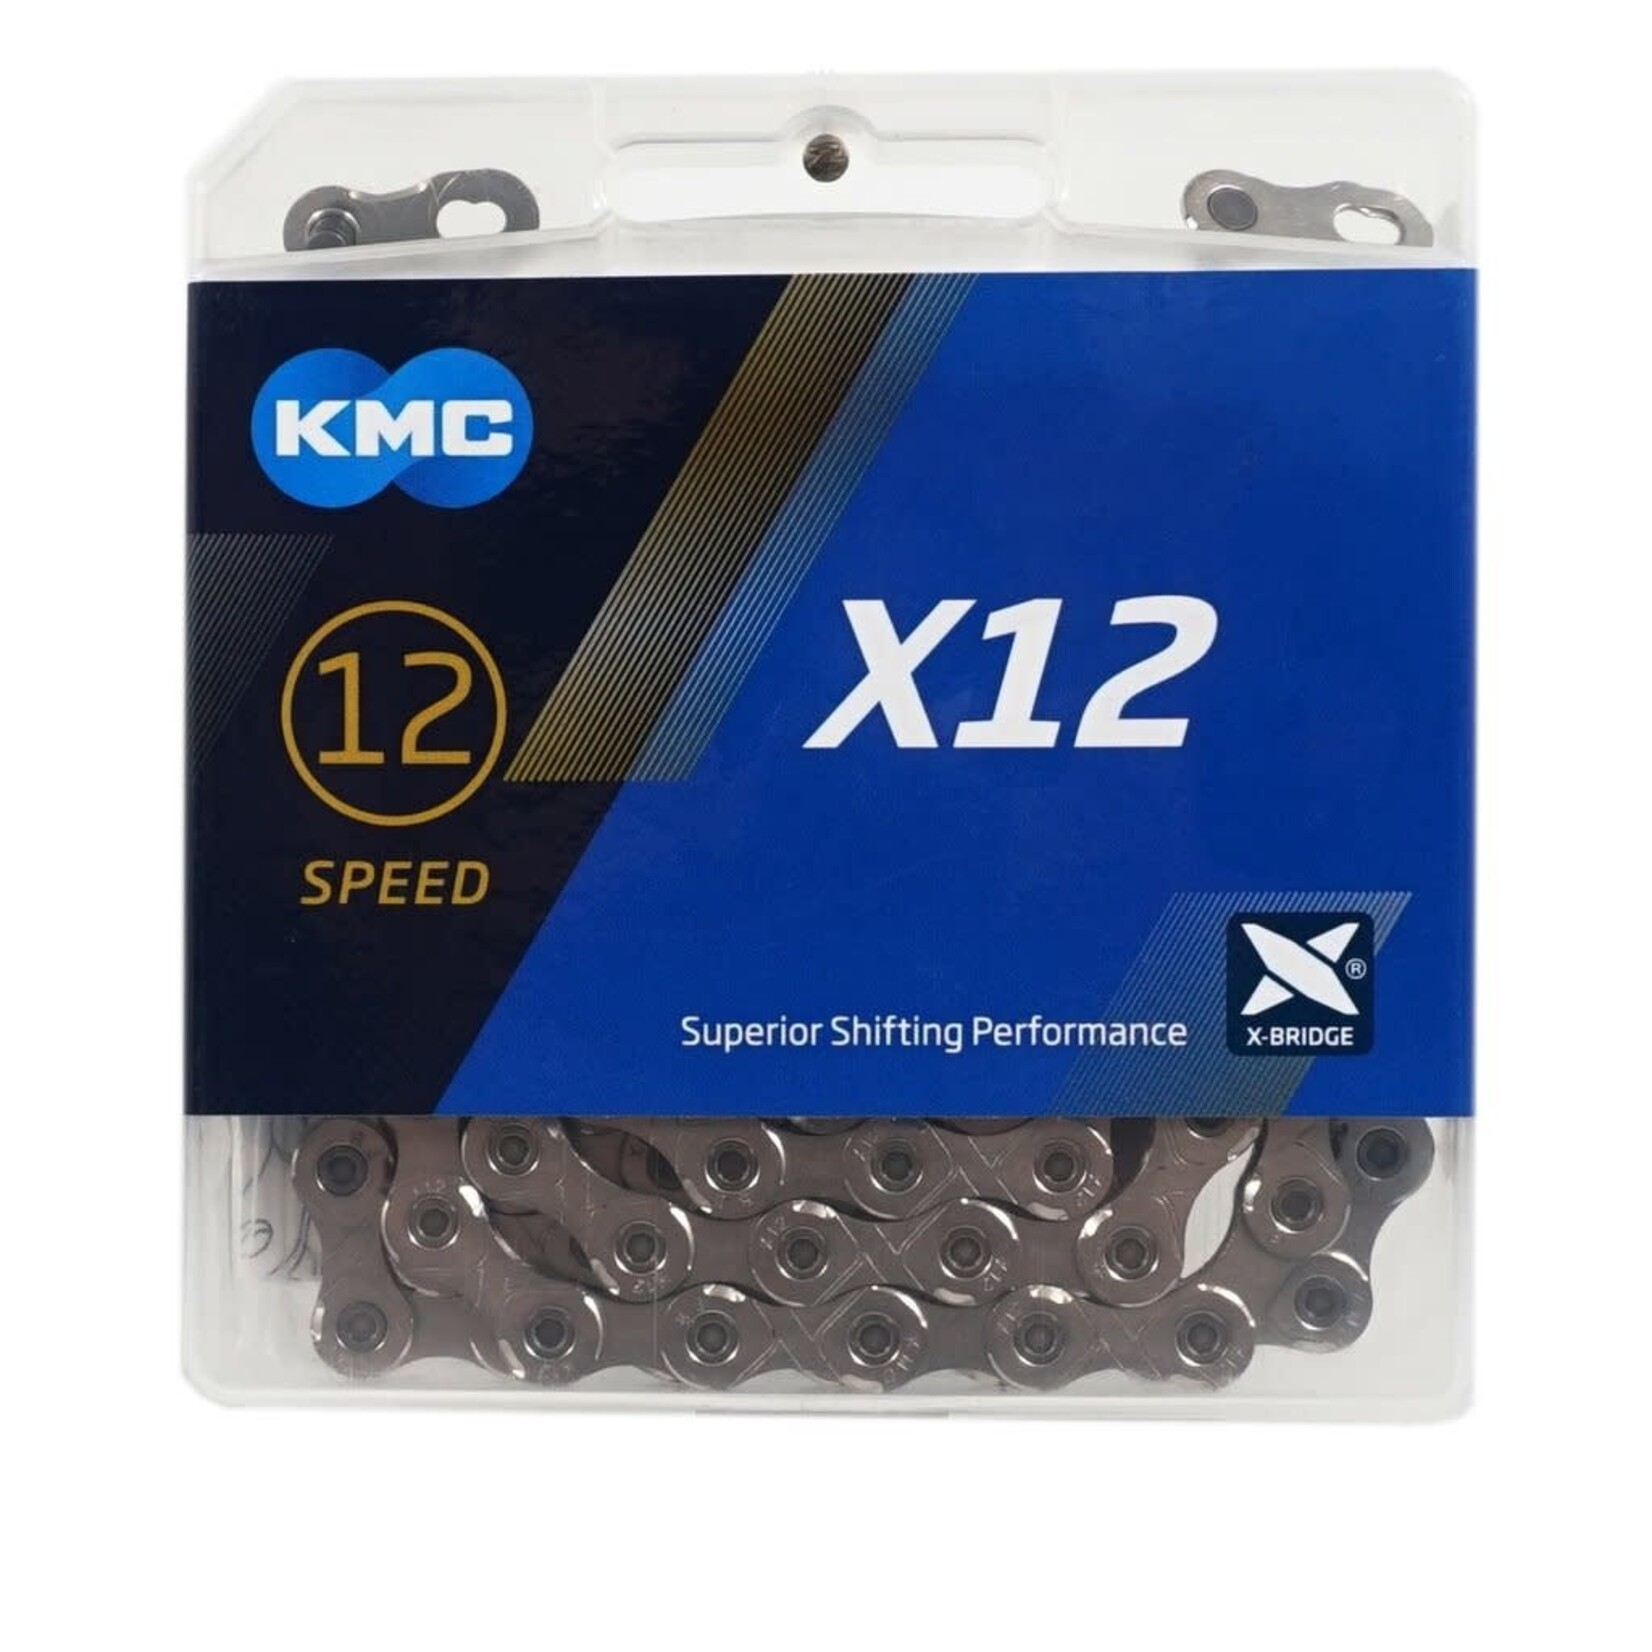 Kmc KMC X12 12V ARG/ARG